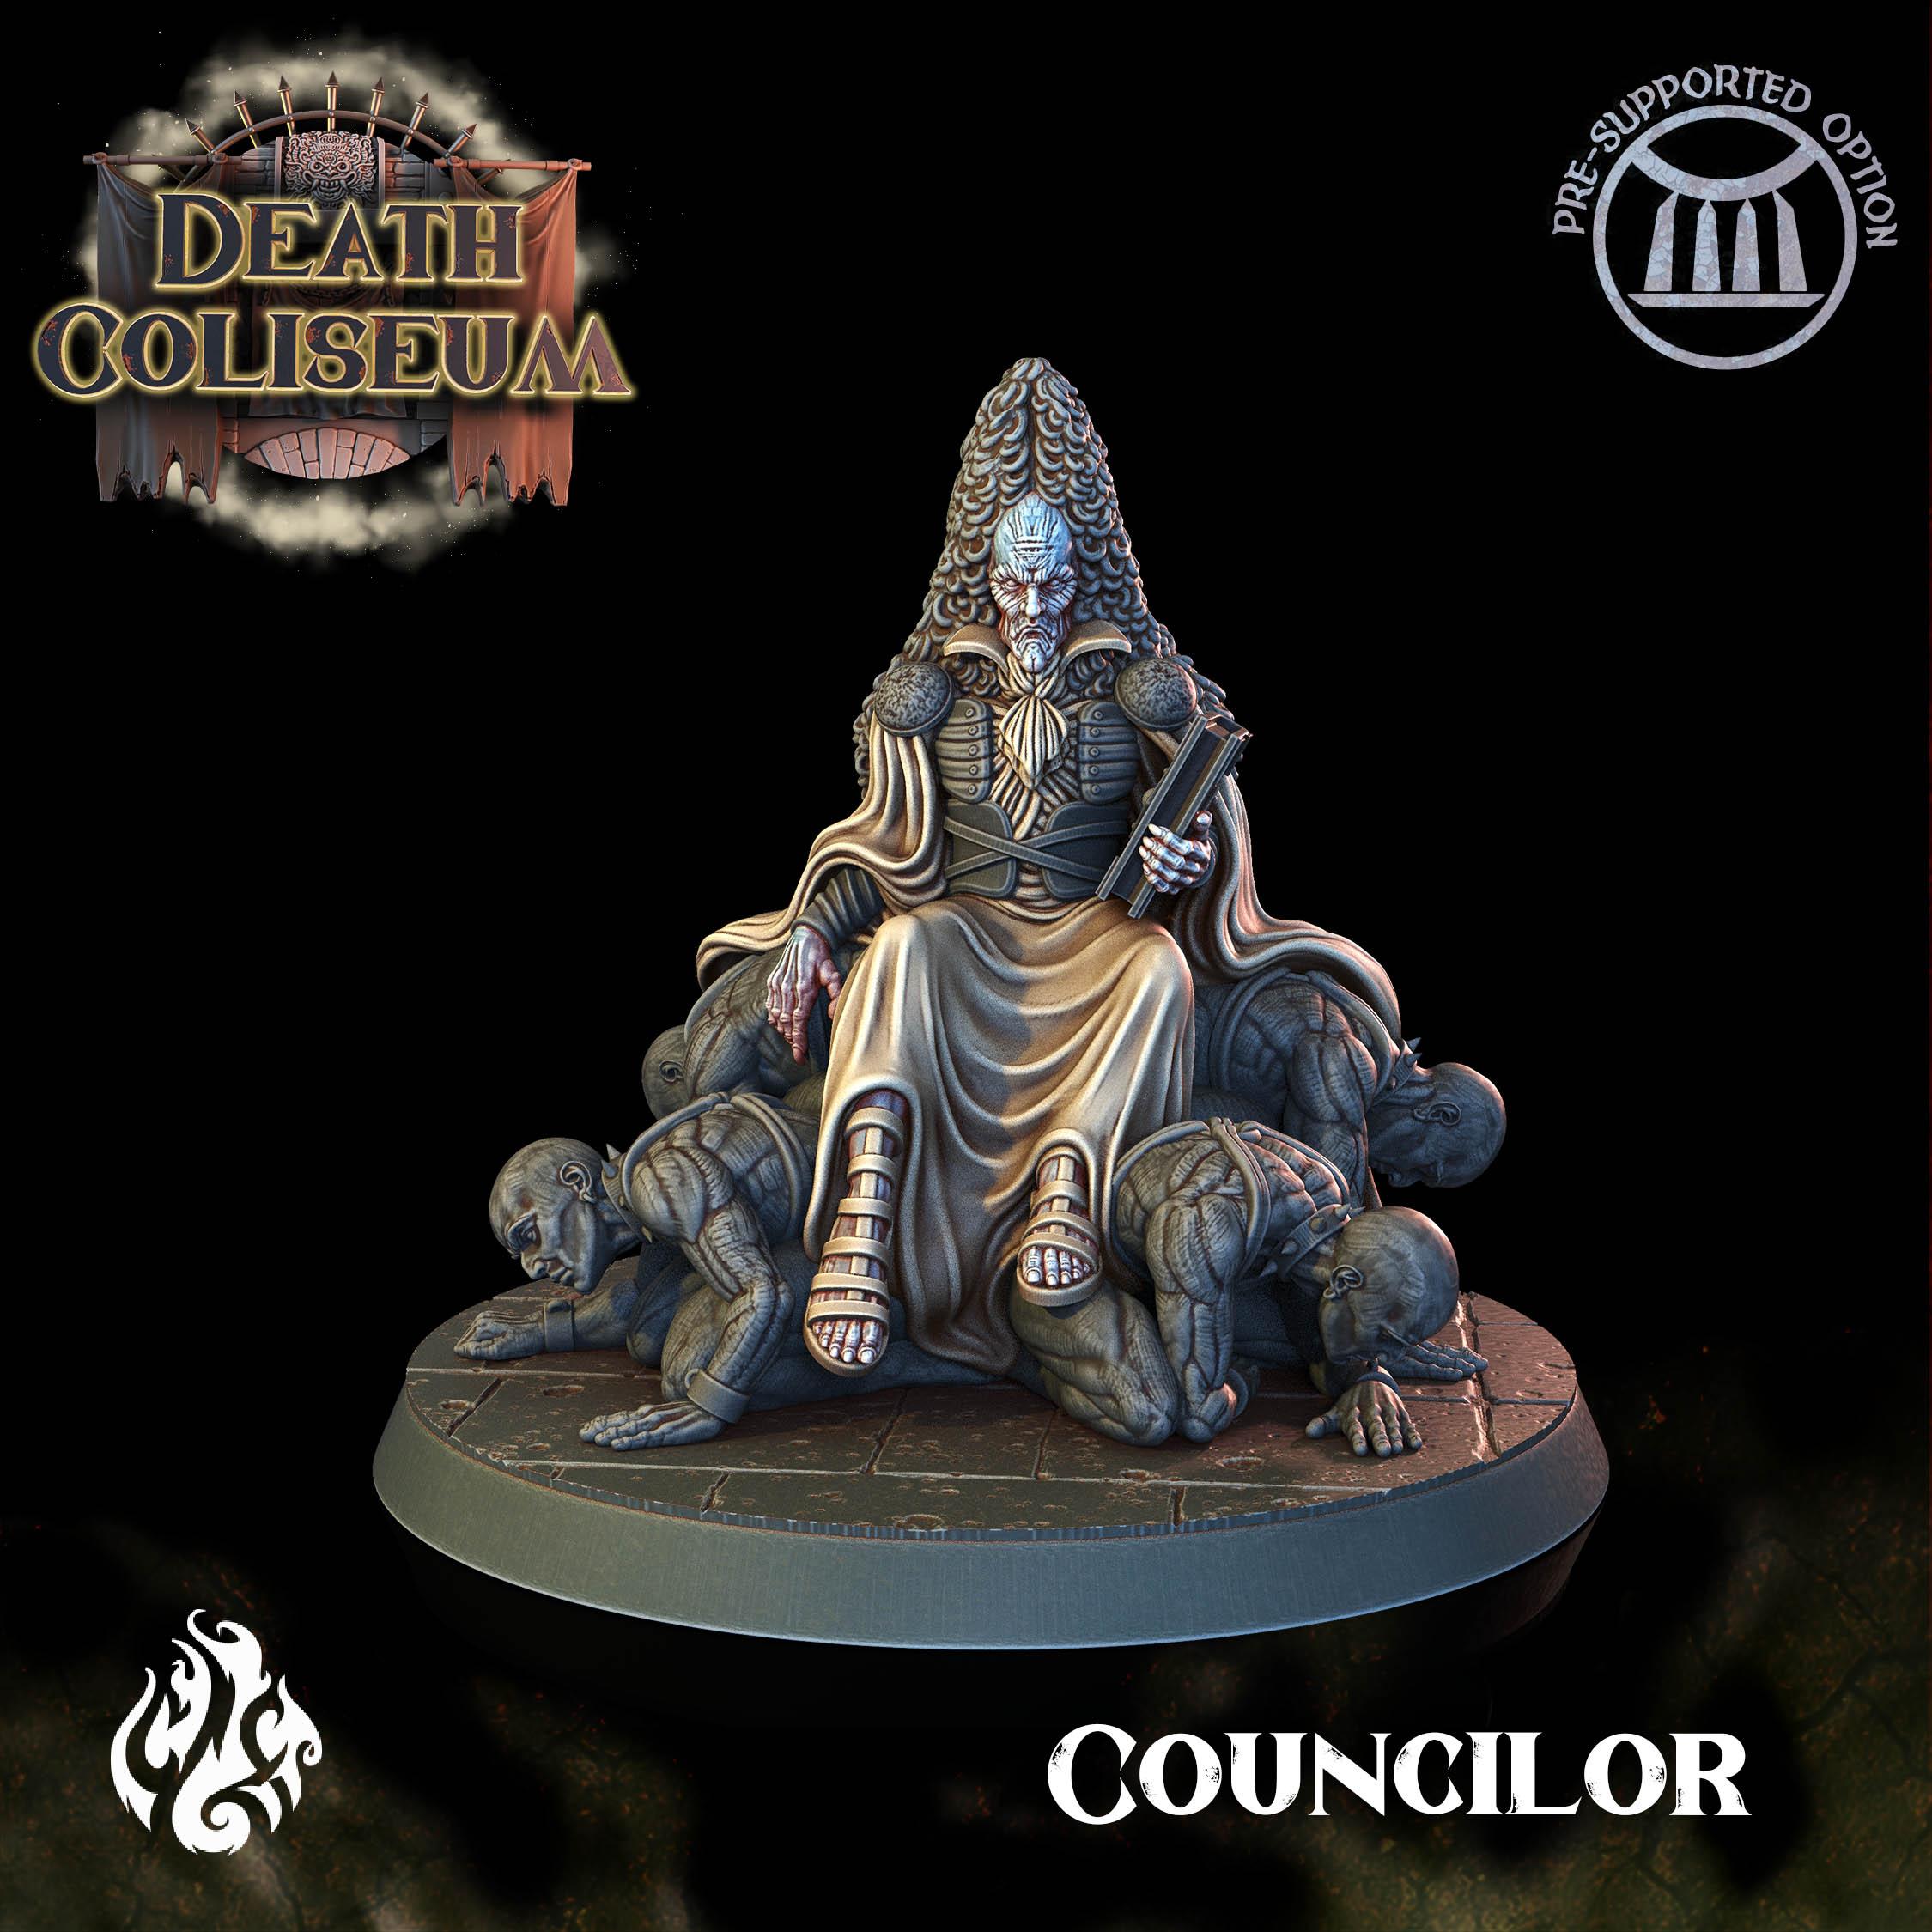 The Councilor 3d model